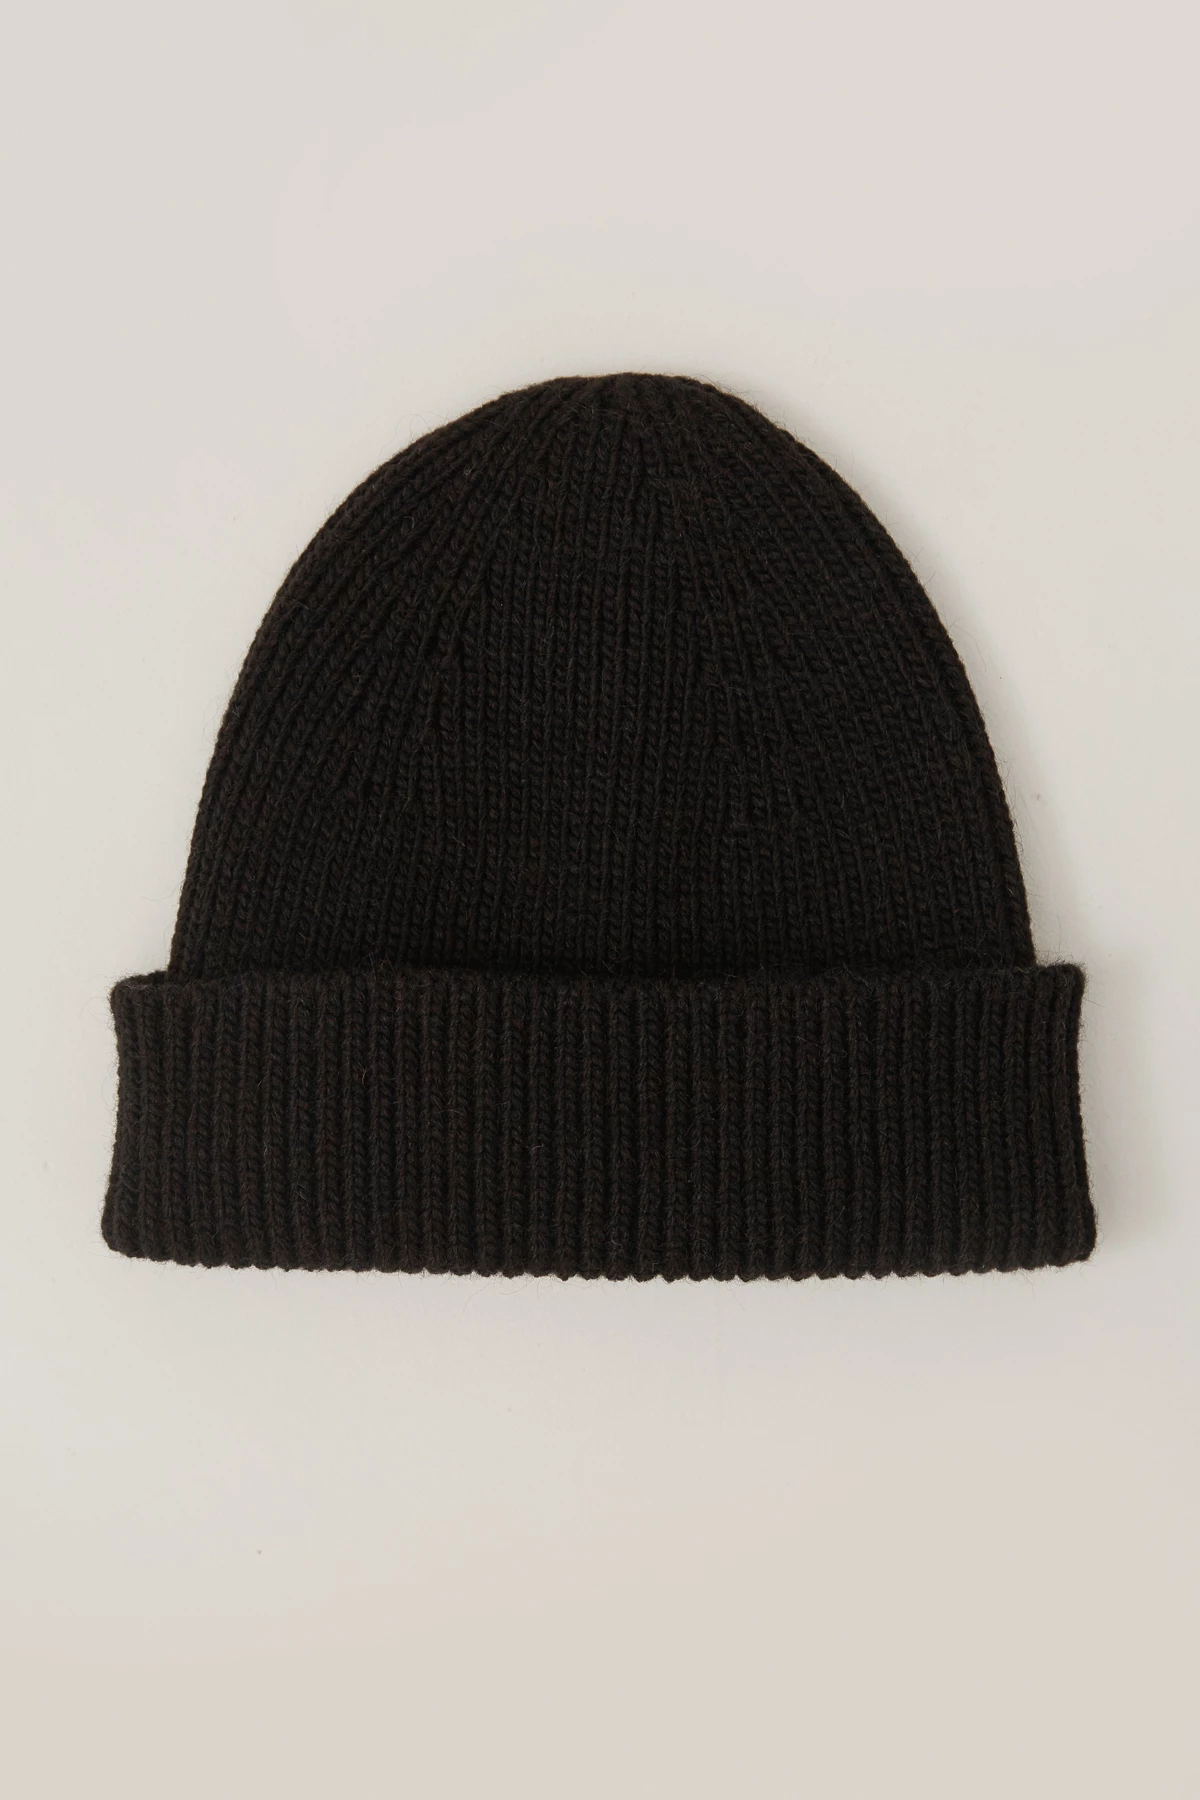 В'язана шапка біні з вовни чорного кольору, фото 2